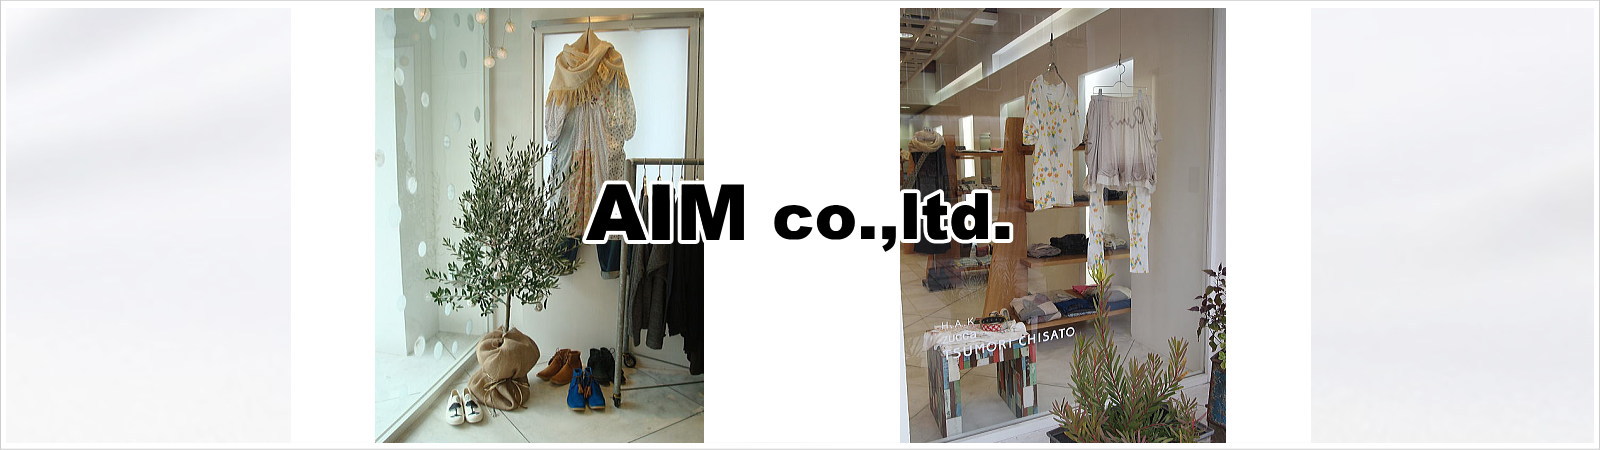 有限会社AIM(アイム)|愛知県岡崎市を拠点にファッションブランド商品の販売及び通信販売をしています。